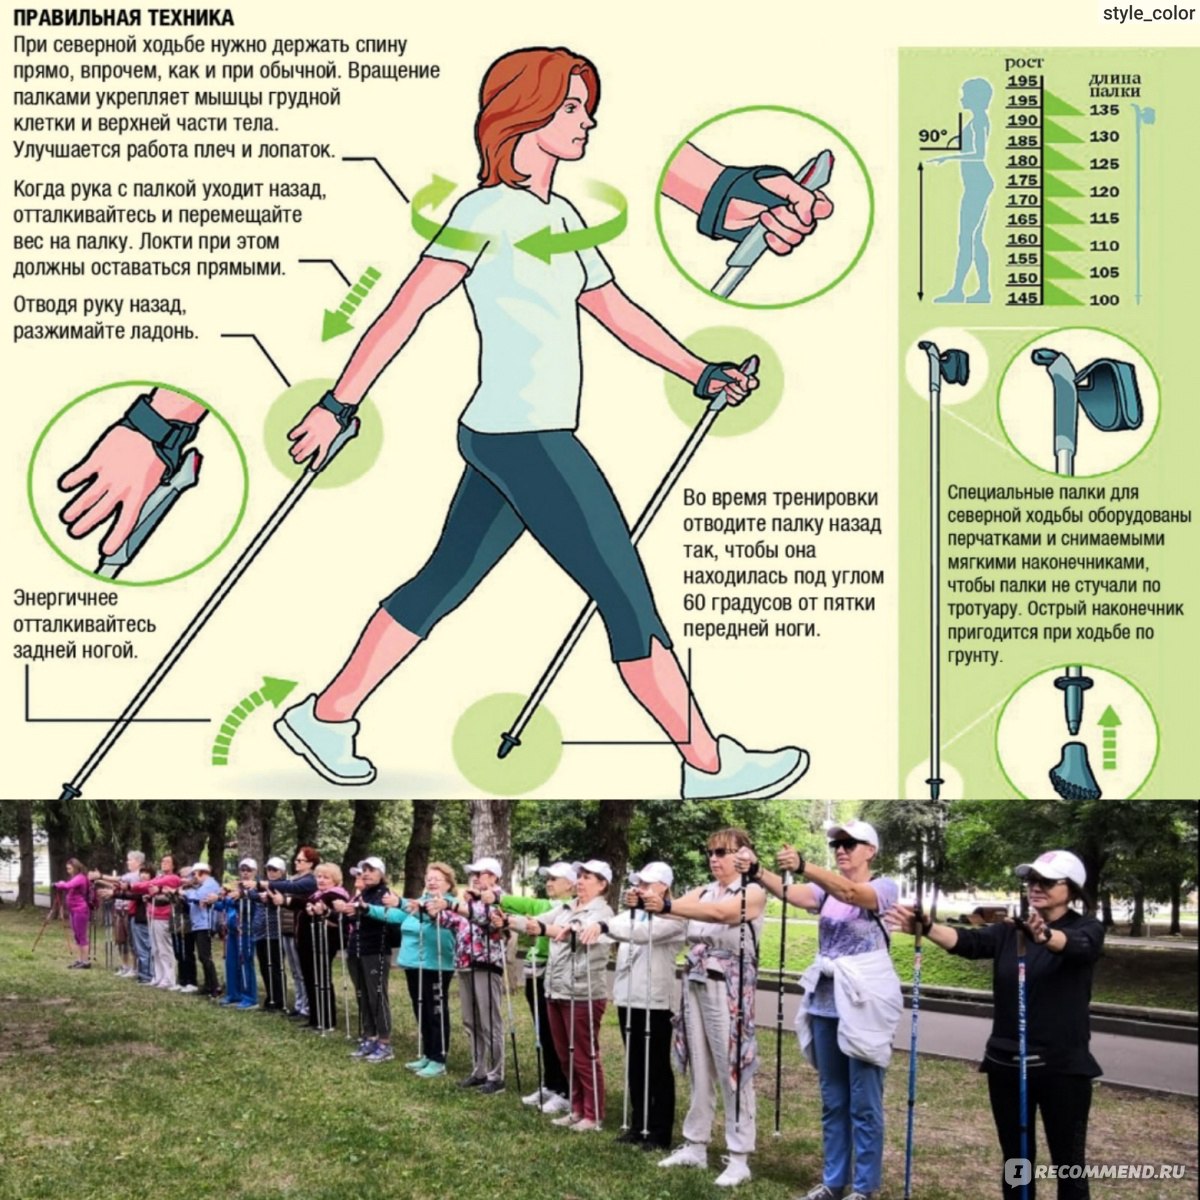 Скандинавская ходьба с палками для похудения: отзывы и рекомендации